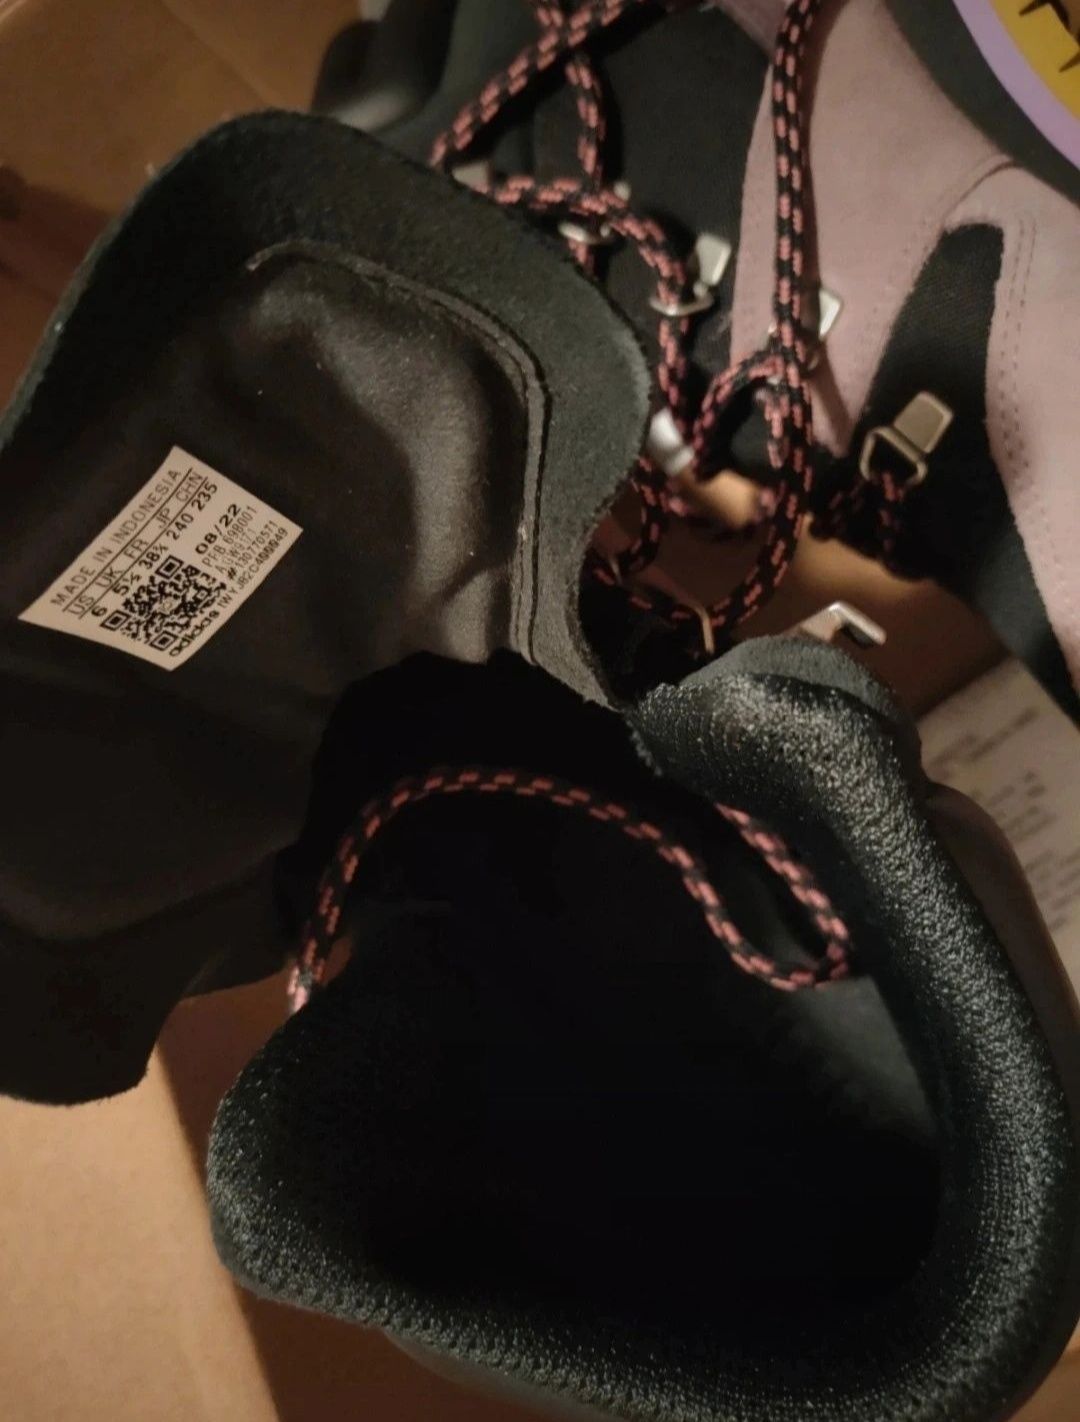 Nowe buty Adidas Terrex Snowpitch 38 39,40 41 C.dry membrana jak gtx